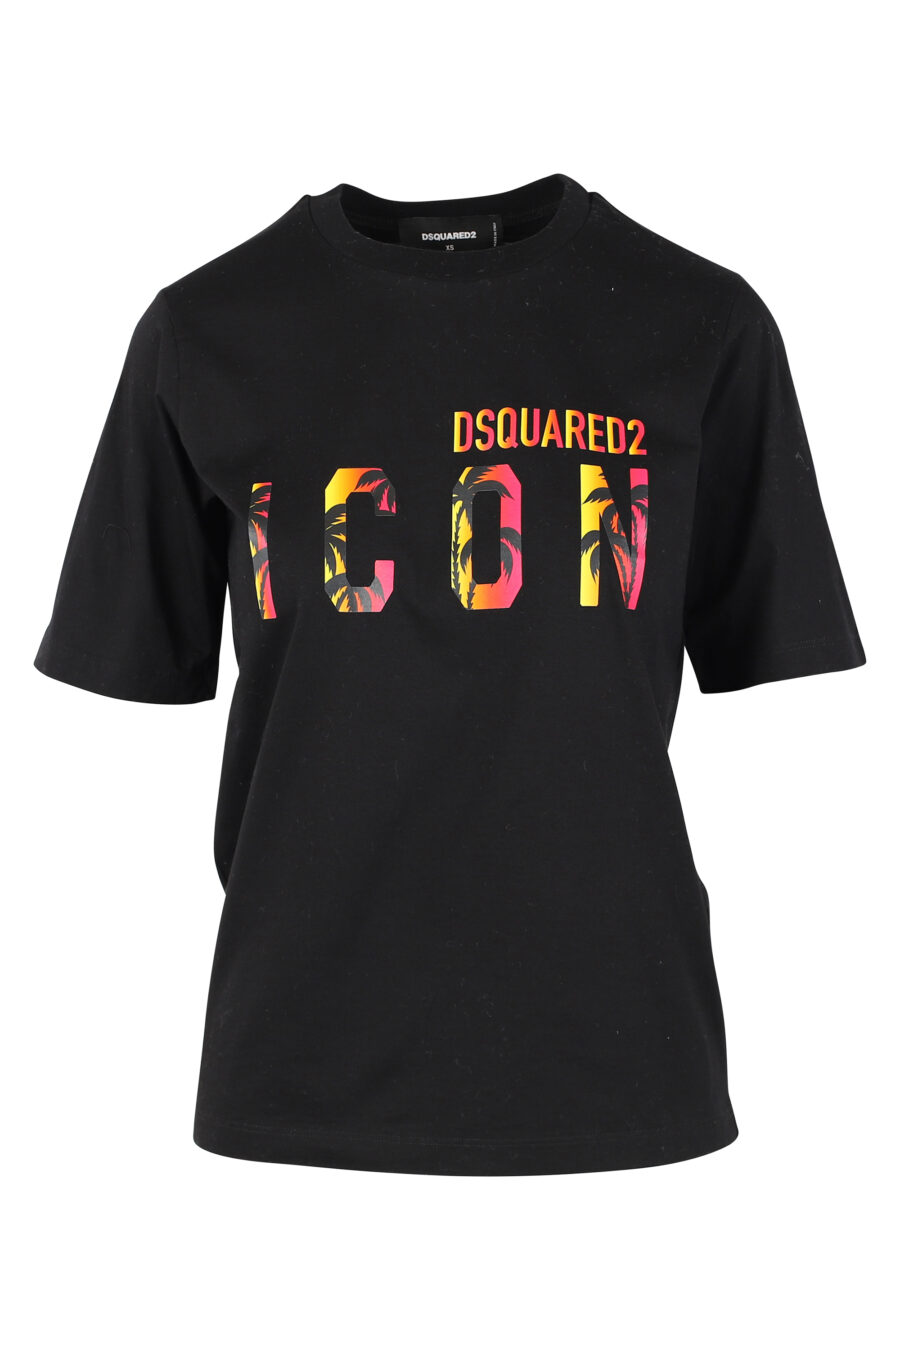 T-Shirt schwarz mit Doppellogo "Ikone Sonnenuntergang" - IMG 9783